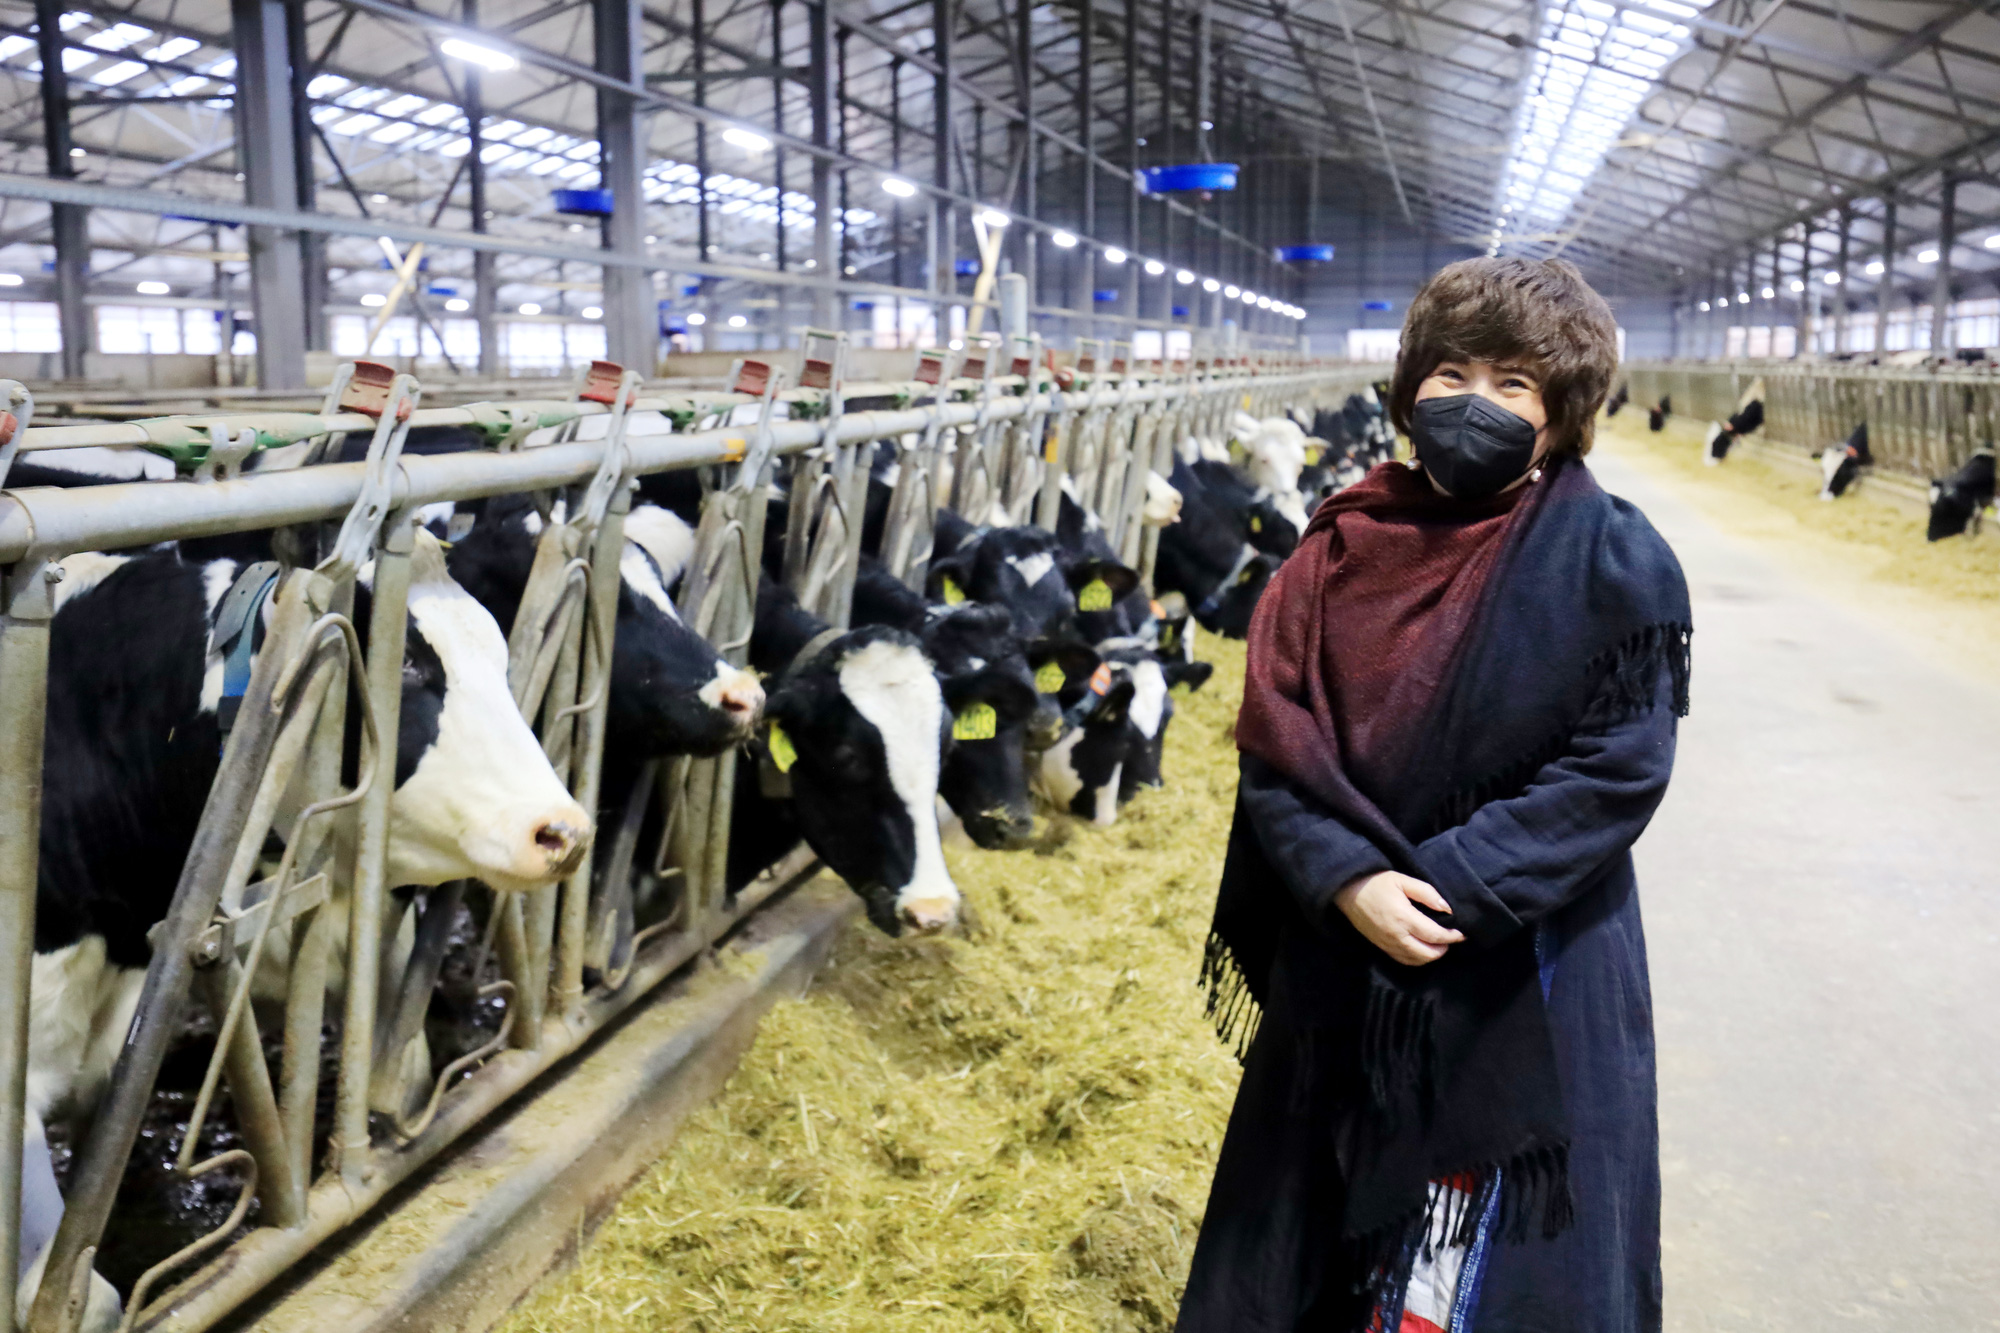 Chăn nuôi bò sữa là ngành nông nghiệp nổi tiếng, đem lại nhiều giá trị kinh tế cho đất nước. Hình ảnh bò sữa ngập tràn năng lượng trong những trang trại xanh sẽ khiến bạn cảm thấy yêu đời hơn và đam mê hơn về nghề nông.